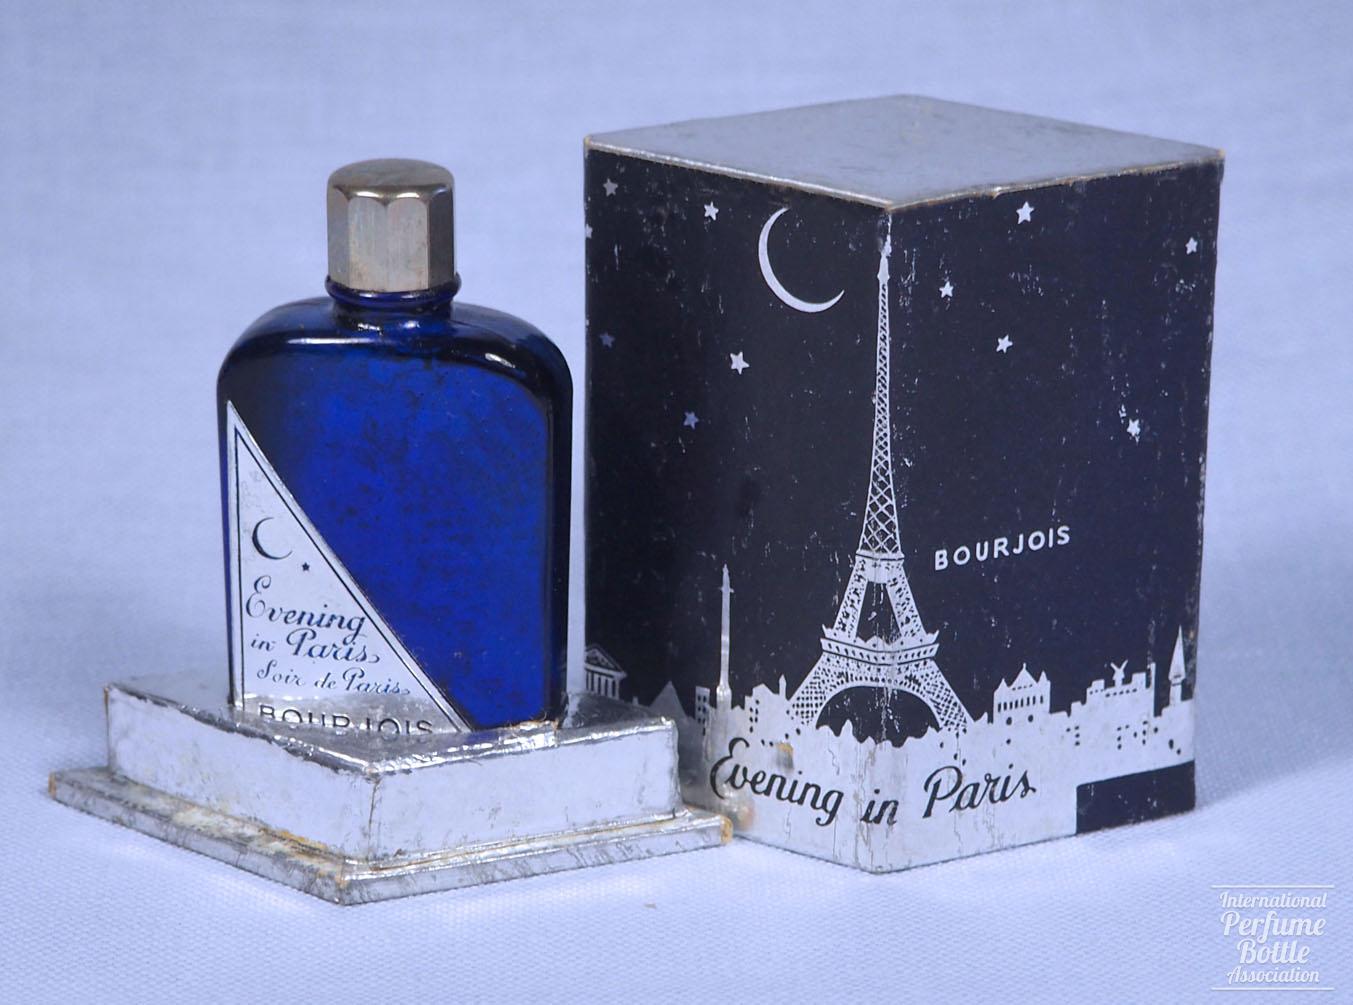 "Evening in Paris" by Bourjois, Eiffel Tower Presentation Box